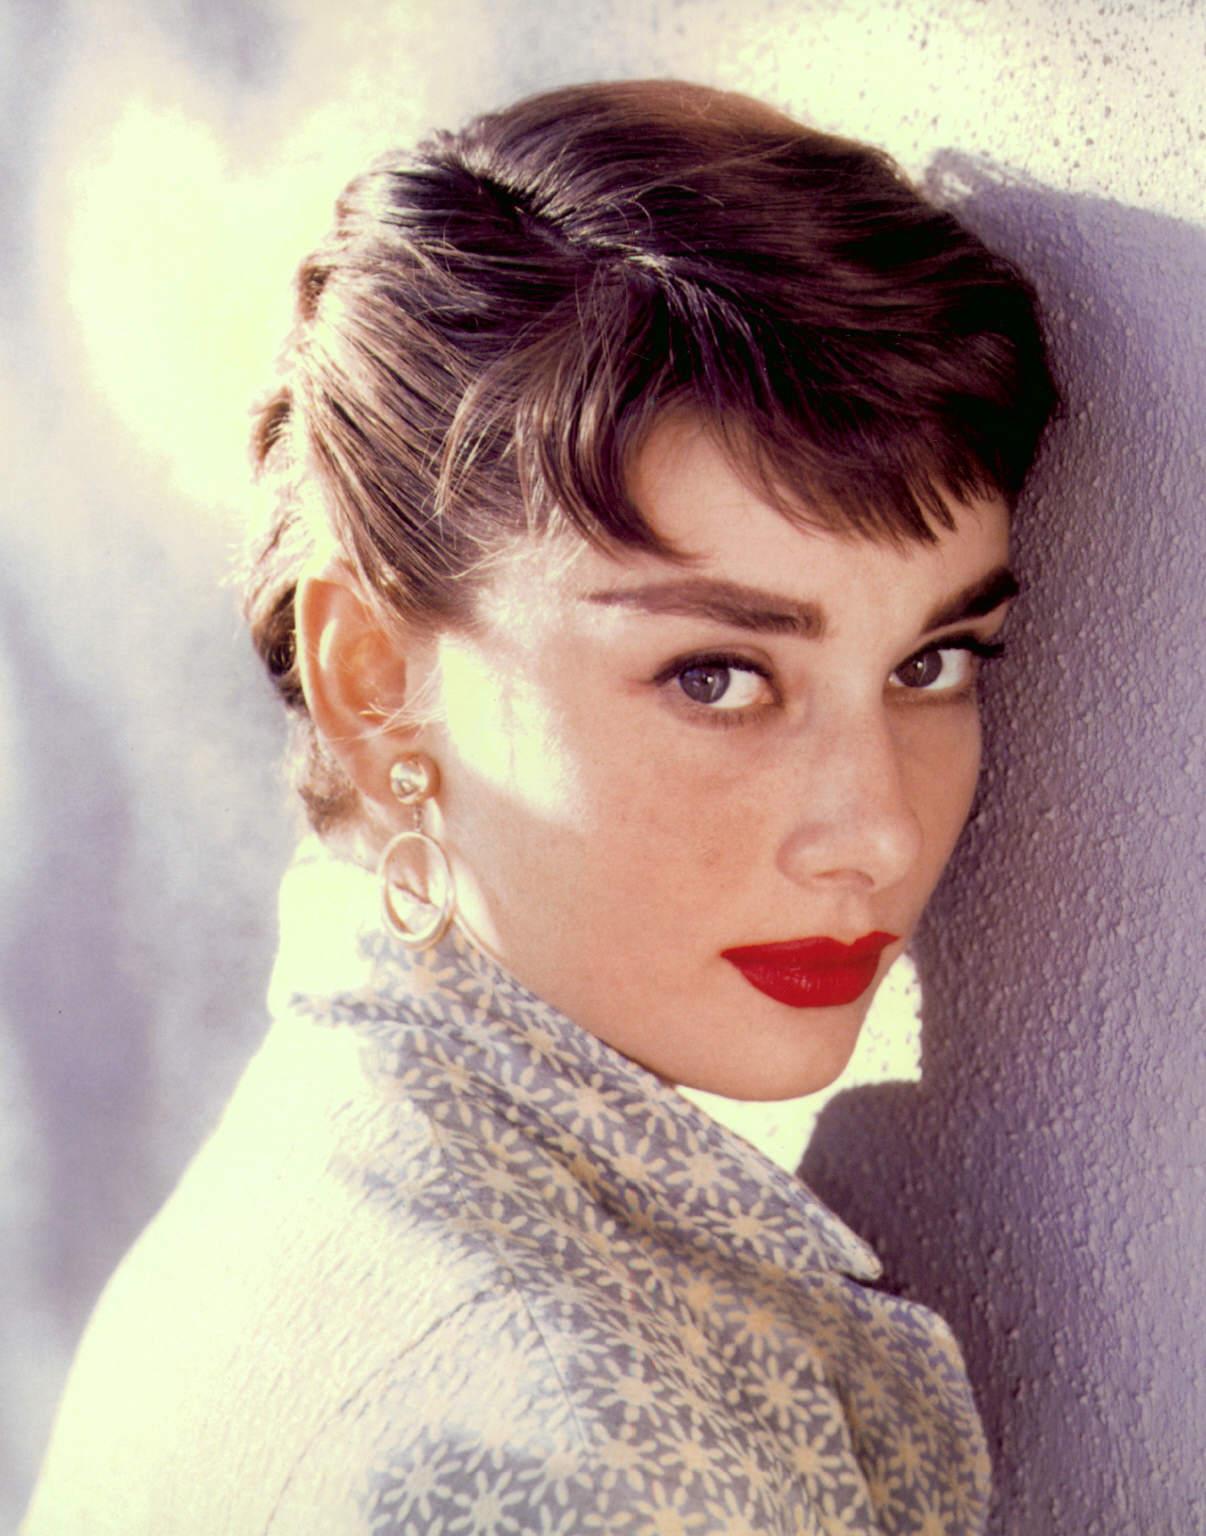 Audrey Hepburn wallpaper